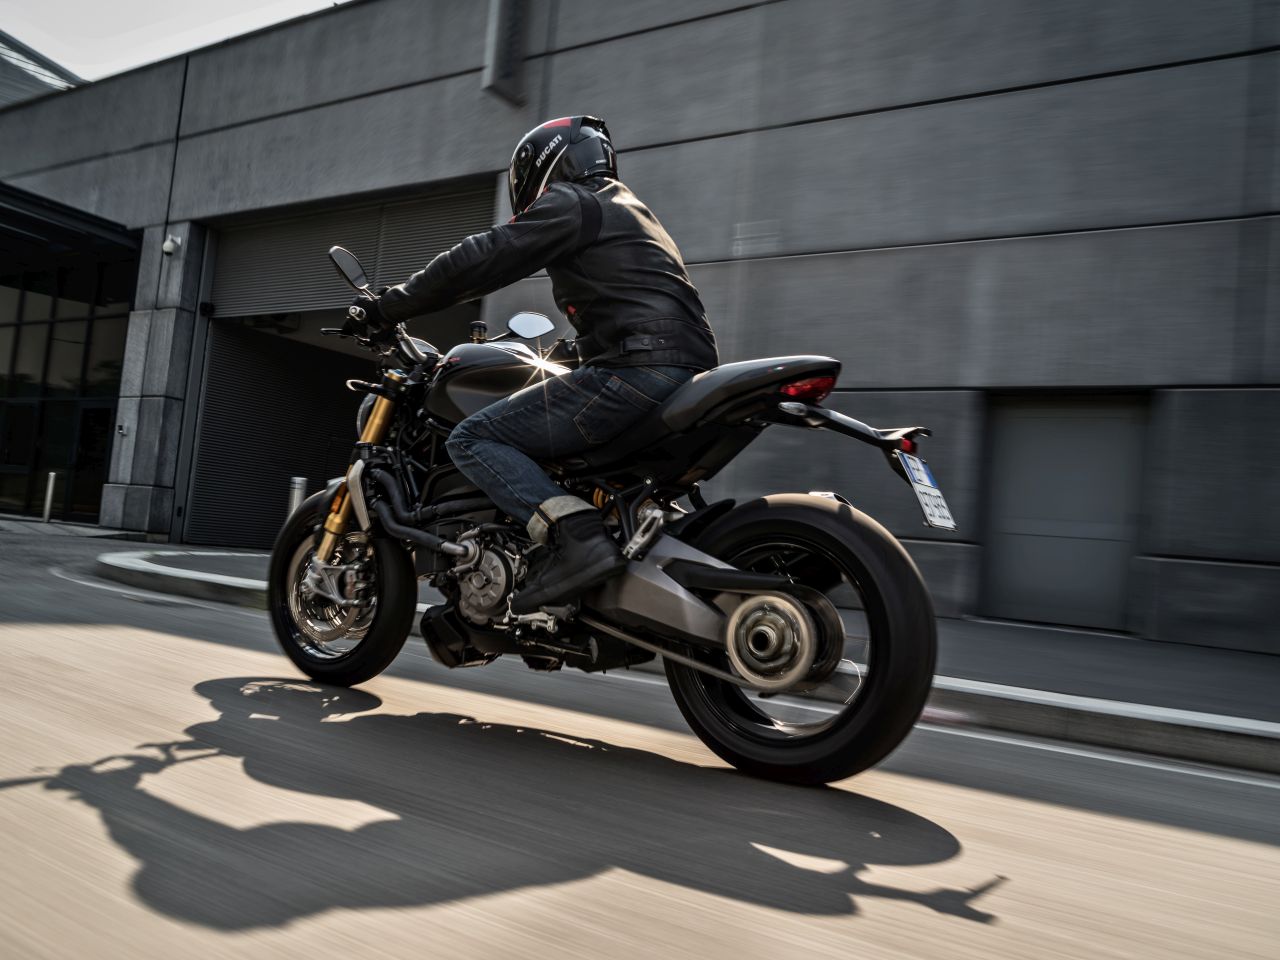 Ducati Monster 1200 S ra mắt phiên bản mới dành cho các tín đồ màu đen